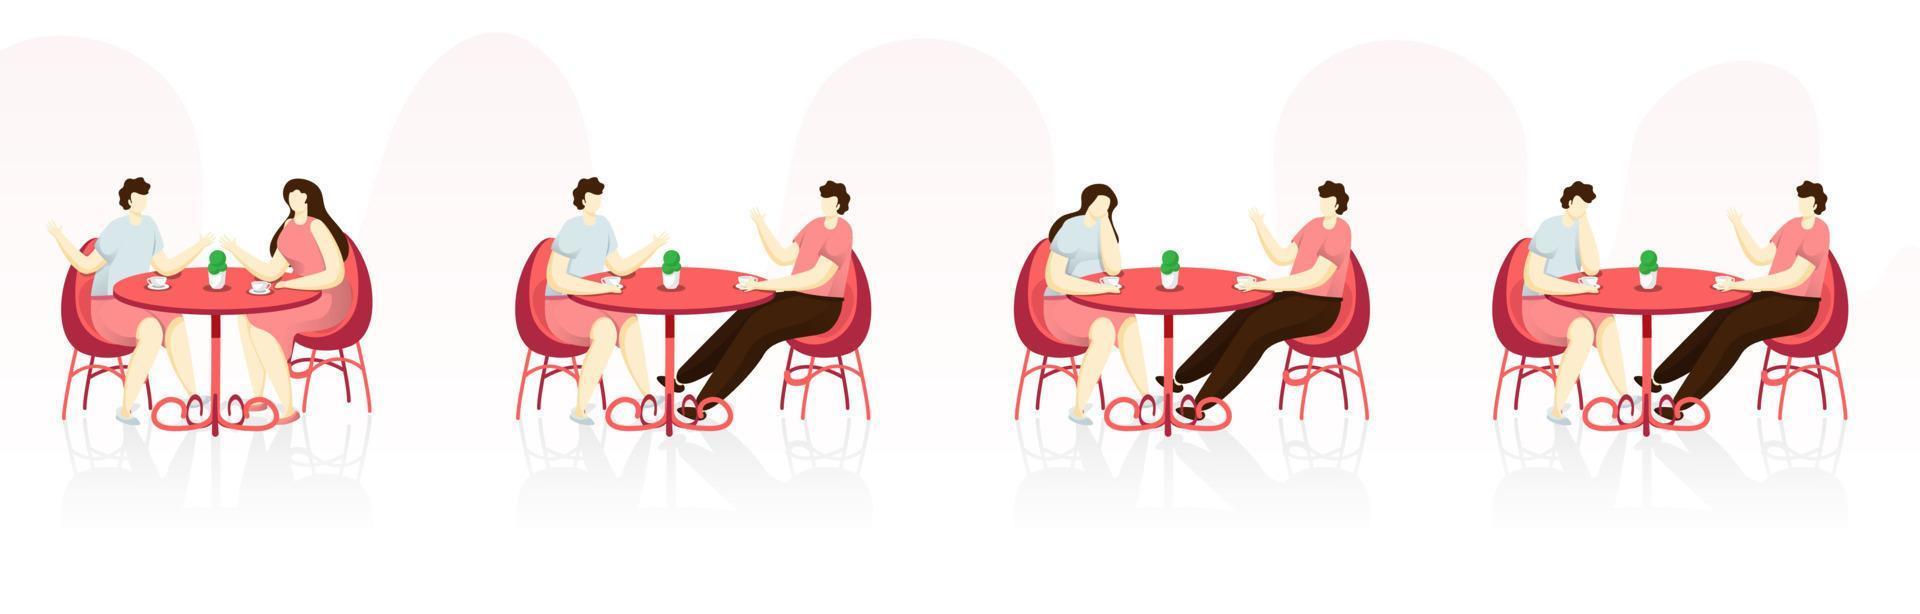 tecknad serie ung pojke och flicka talande tillsammans sitta på restaurang eller Kafé. vektor